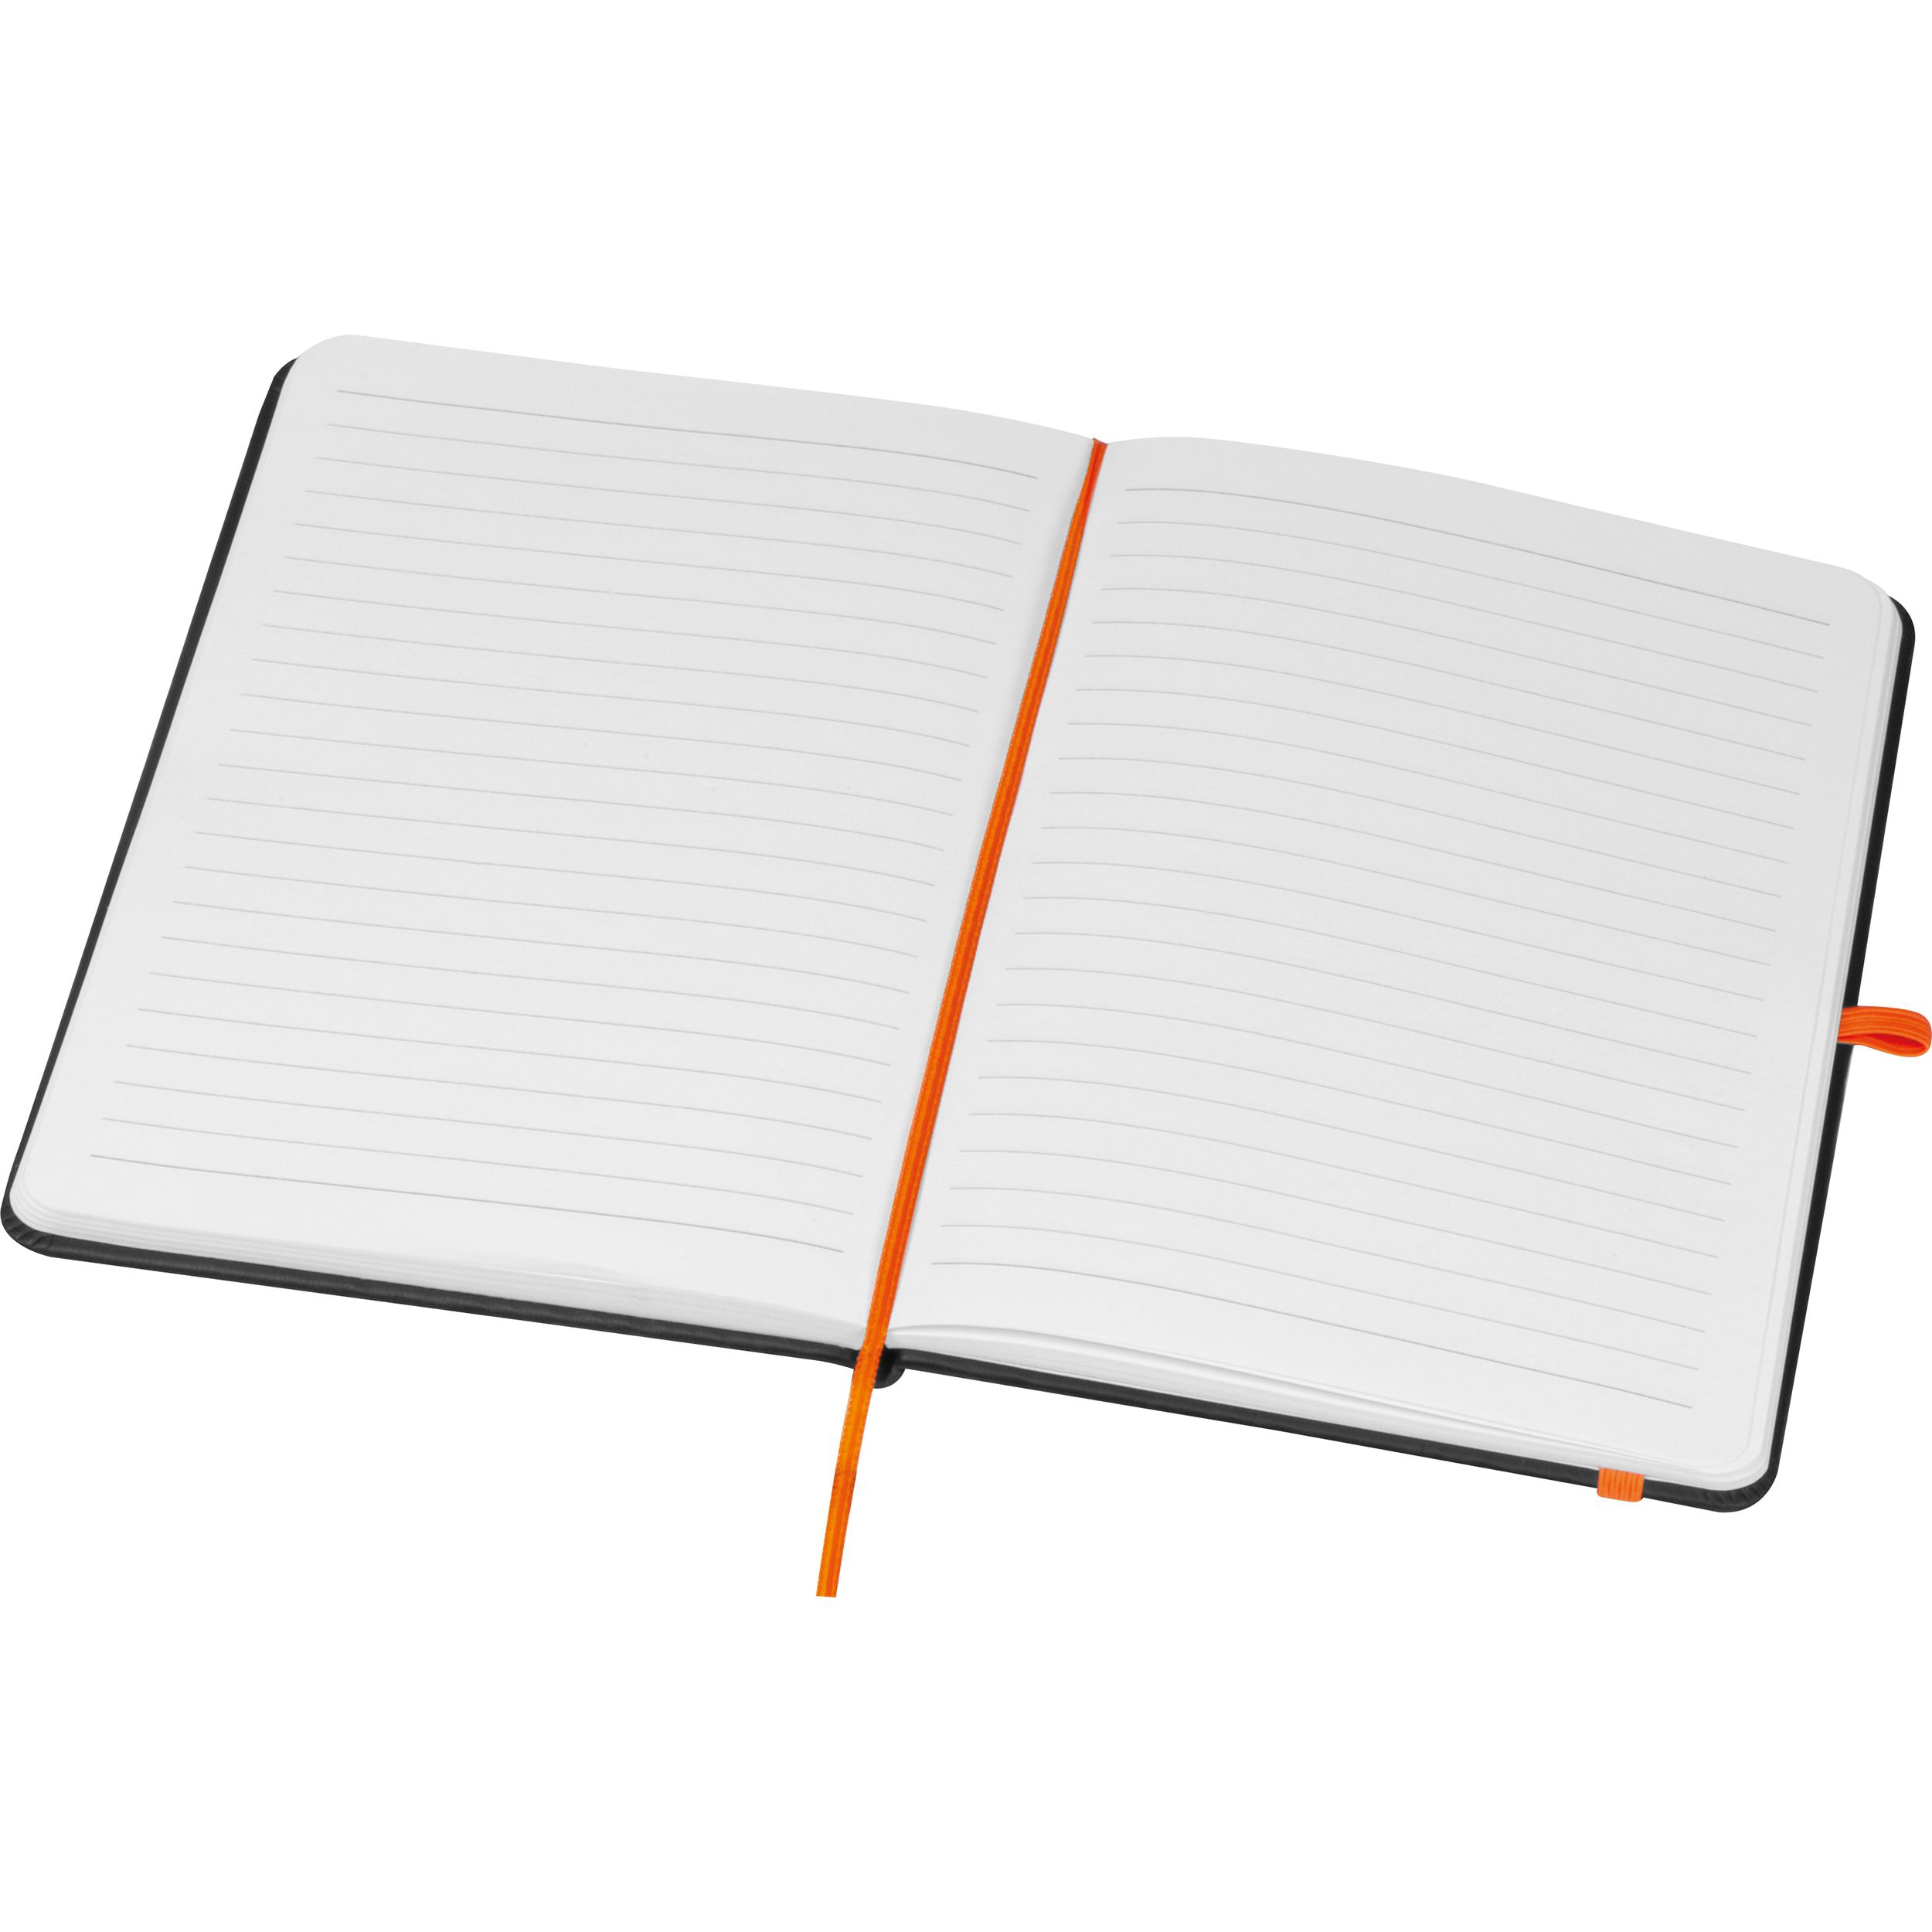 A5 Notizbuch mit farbiger Gravur , orange